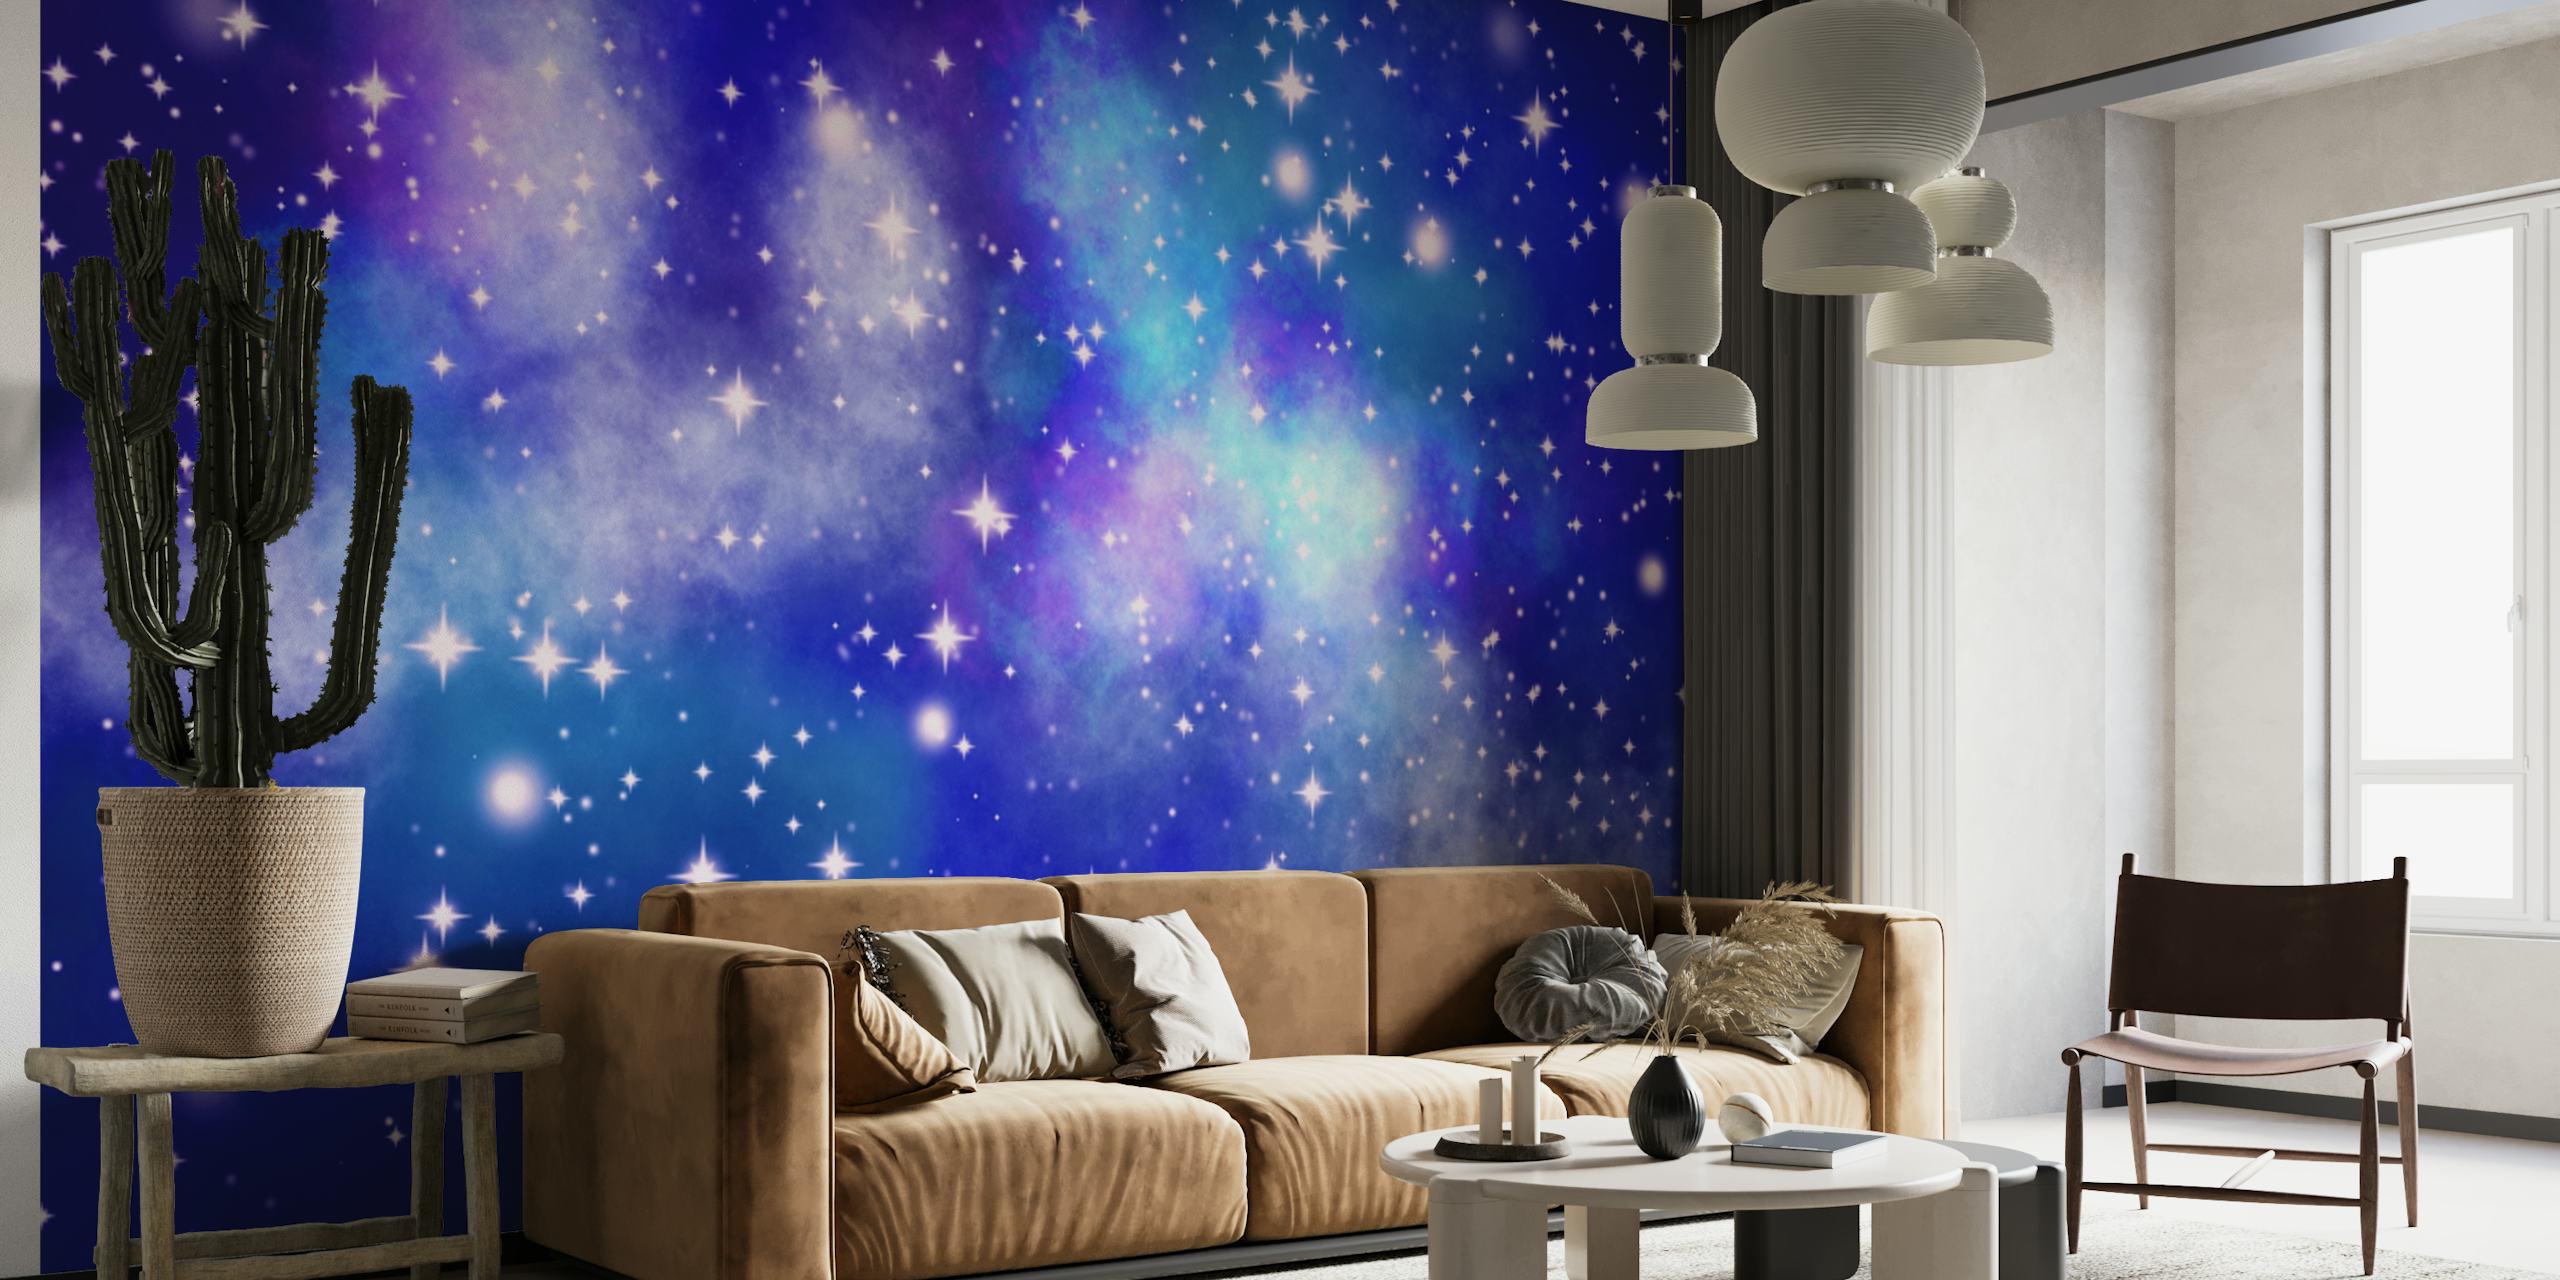 Zvjezdano noćno nebo s raznim nijansama plave i svjetlucavim zvijezdama koje predstavljaju zidni mural s pogledom na galaksiju